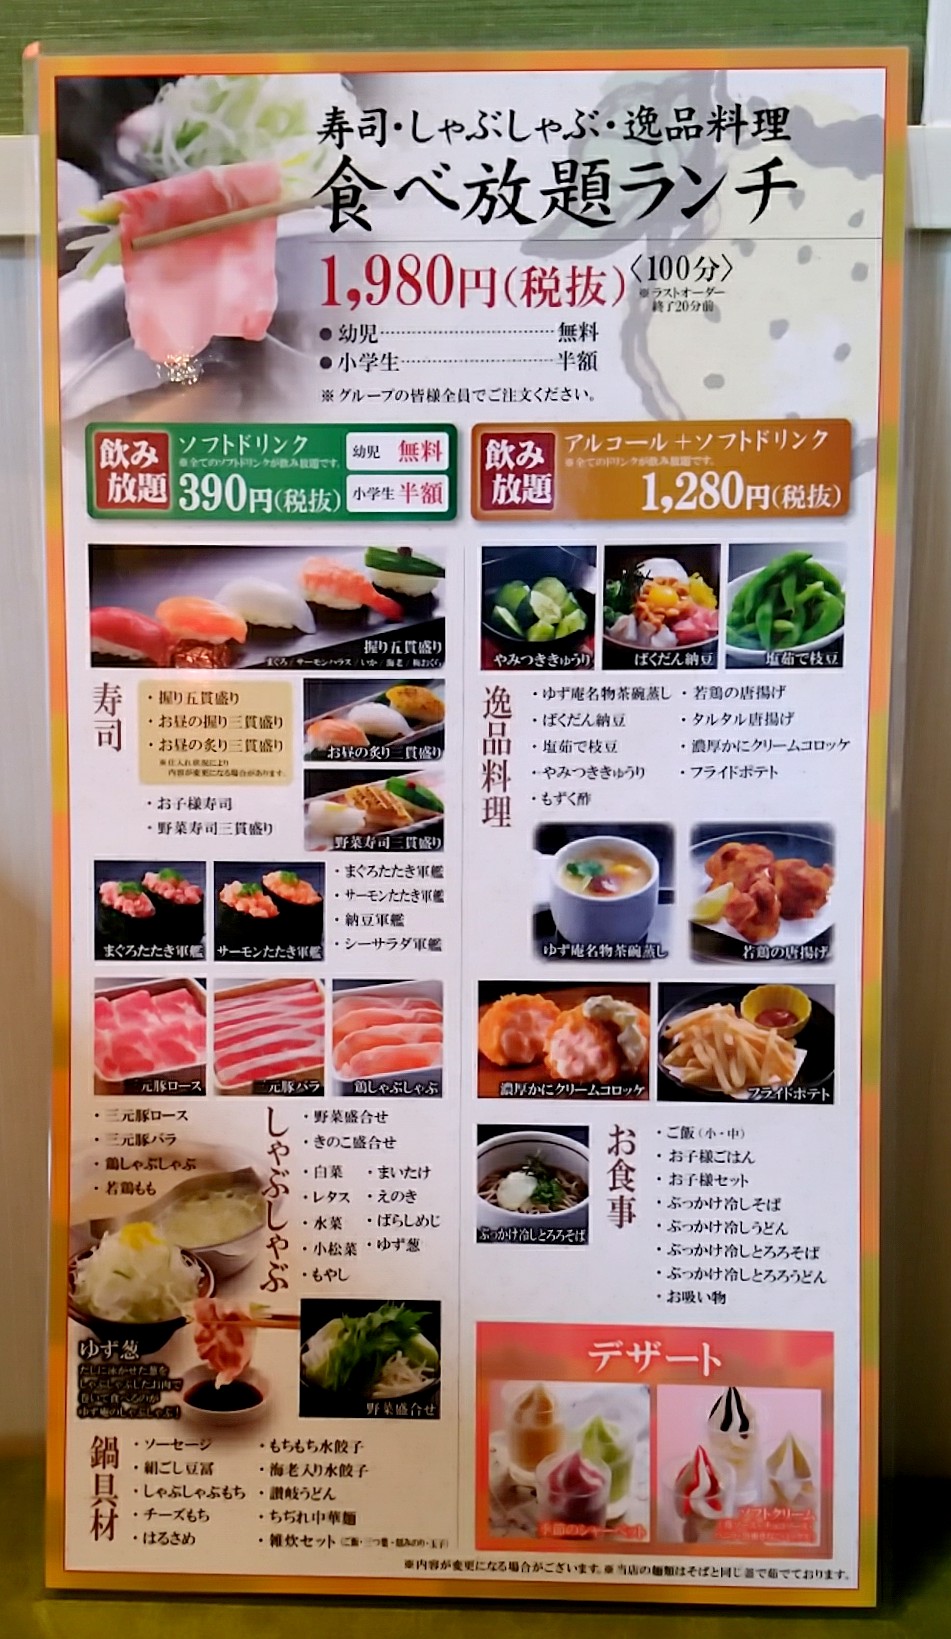 寿司 しゃぶしゃぶ ゆず庵 宇都宮店 新店舗オープン 平日ランチ食べてきた